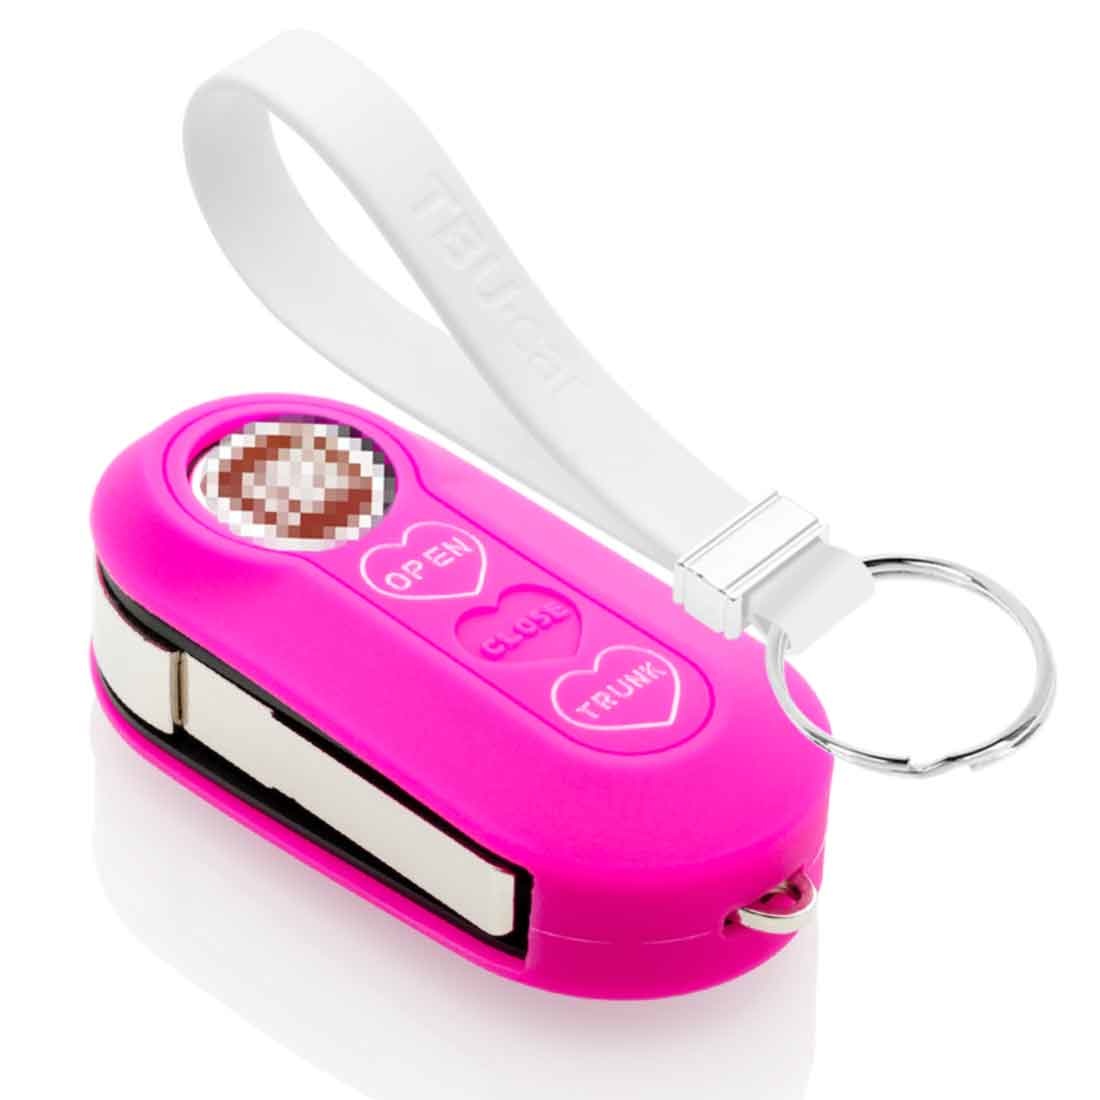 TBU car TBU car Autoschlüssel Hülle kompatibel mit Lancia 3 Tasten - Schutzhülle aus Silikon - Auto Schlüsselhülle Cover in Neon Pink (Herzen)